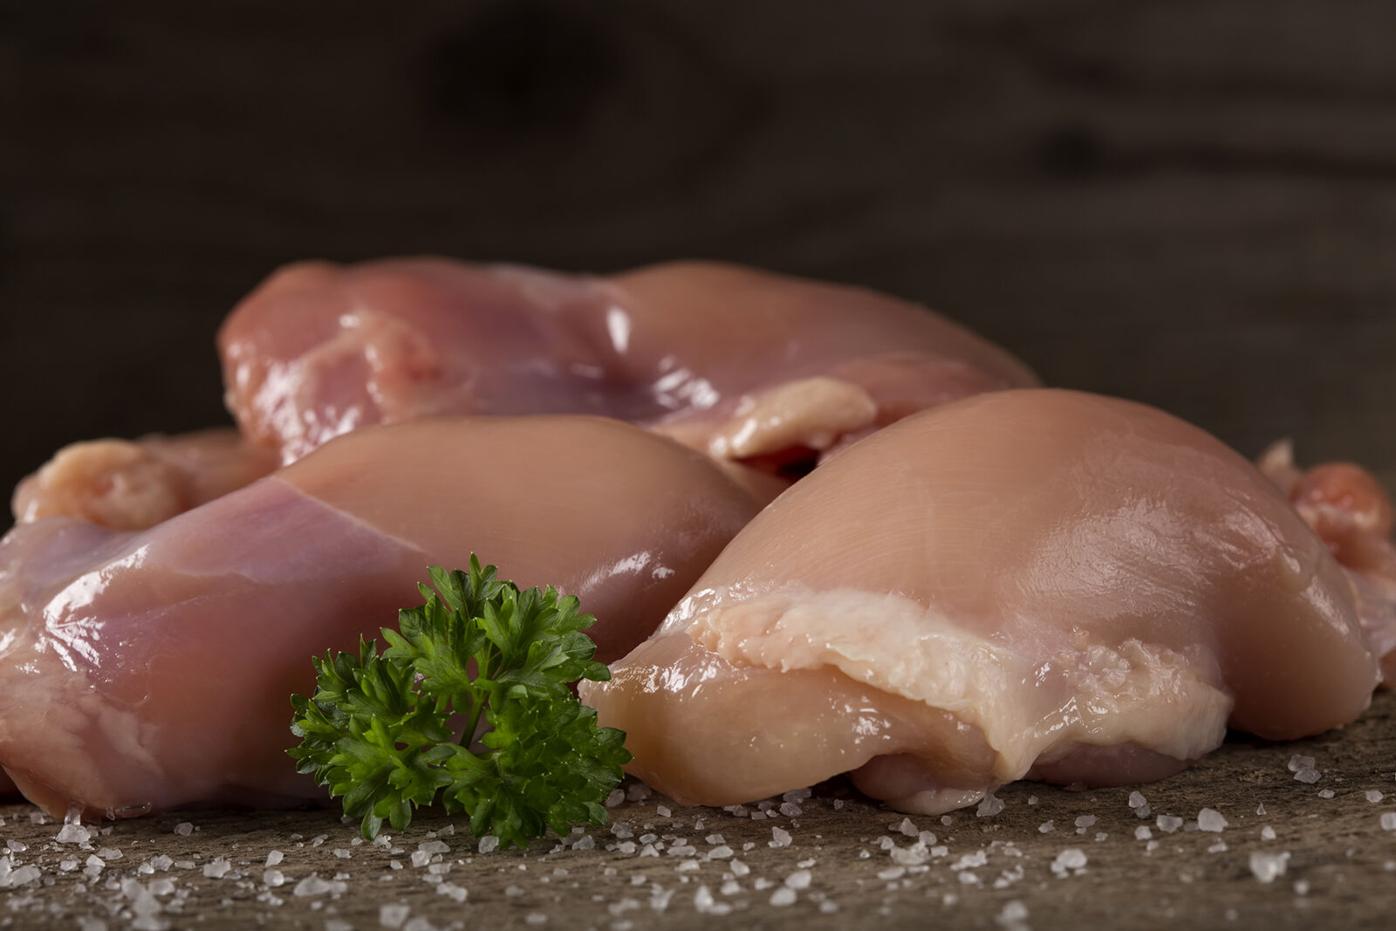 Raw Boneless Skinless Chicken Breast Portions (pieces/trim) blast